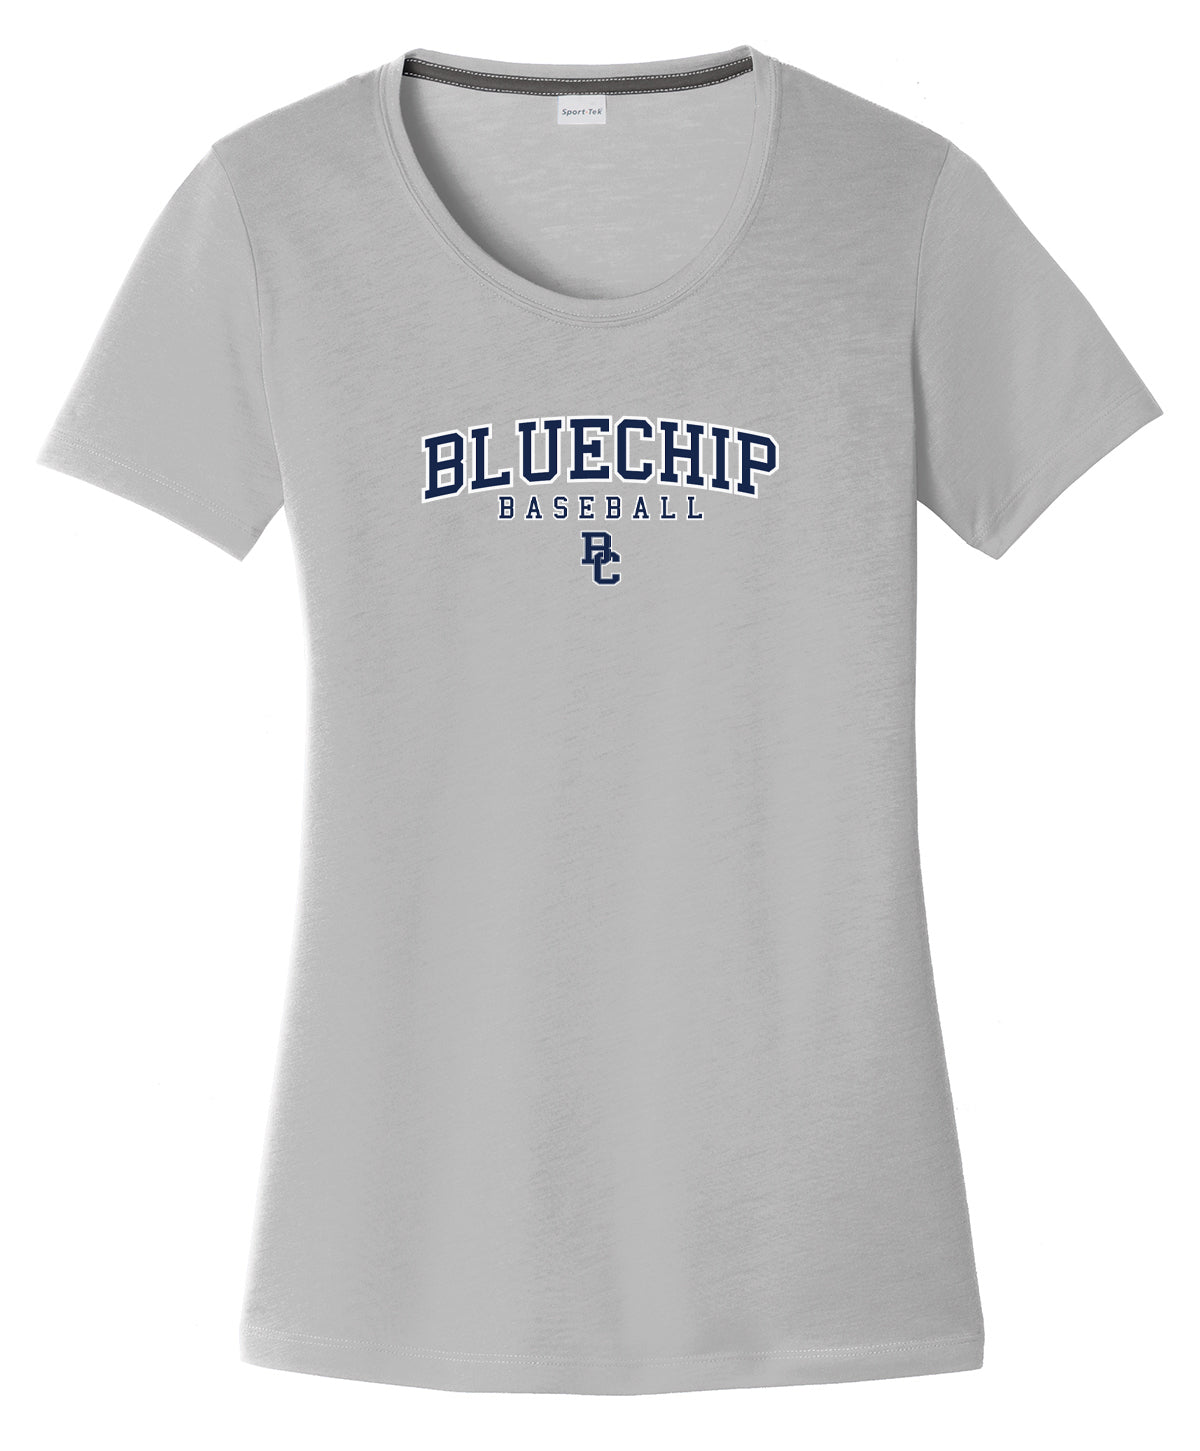 BlueChip Baseball Women's CottonTouch Performance T-Shirt